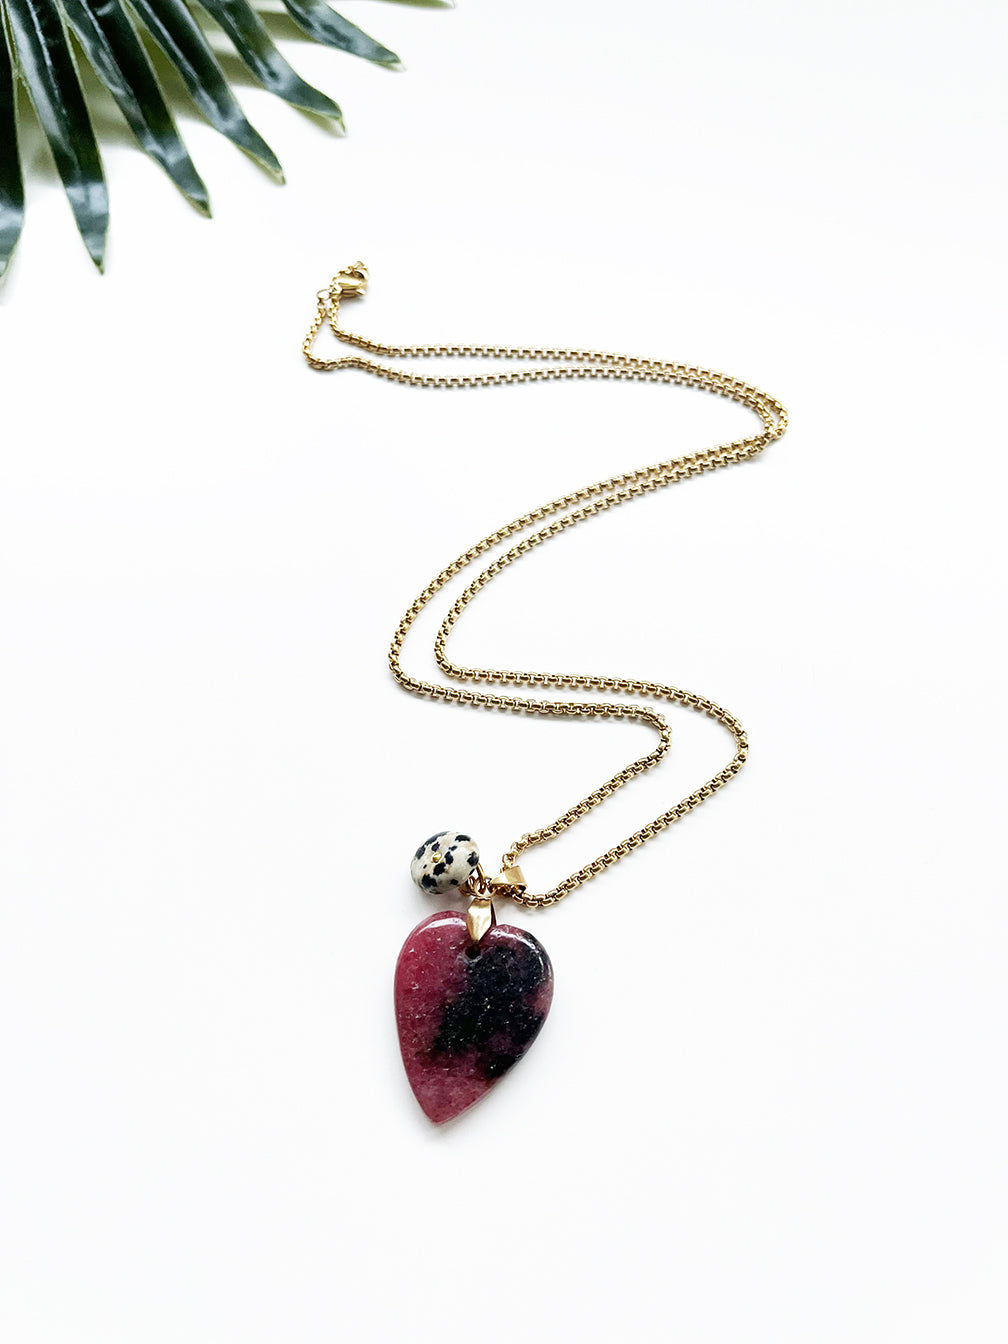 touchstone necklace - rhodonite and dalmatian jasper